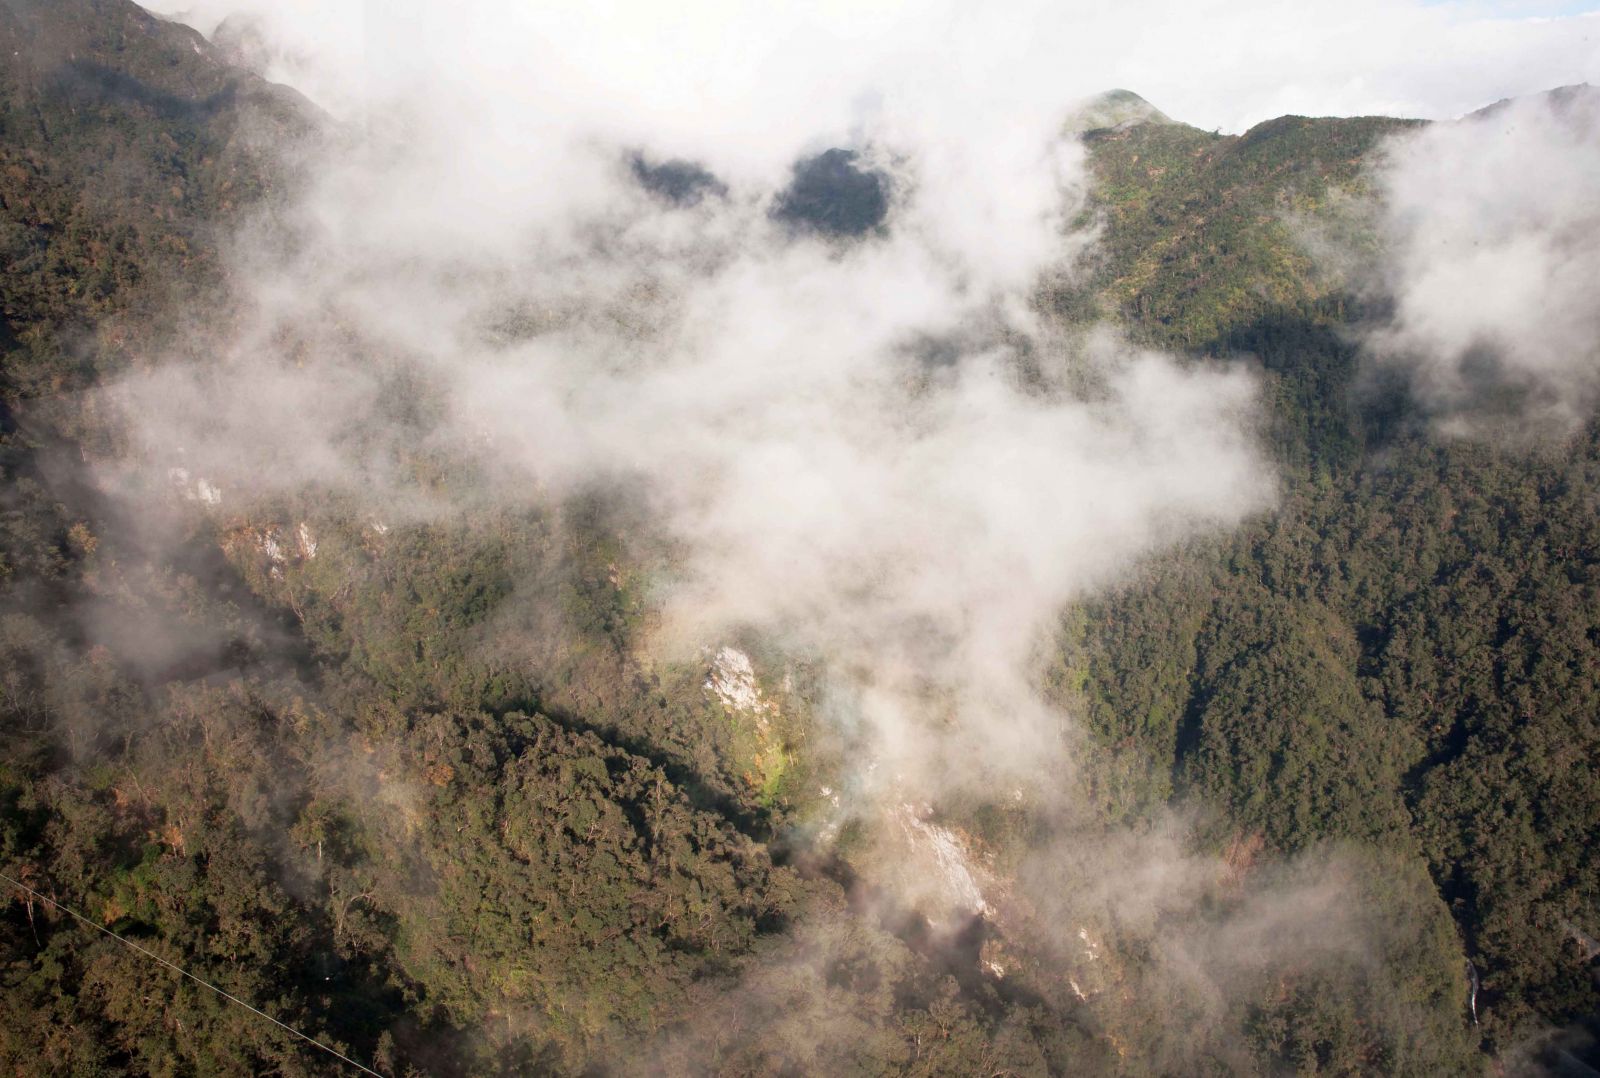 Mây lướt qua những “phân cảnh” thiên nhiên kỳ ảo của núi rừng Hoàng Liên Sơn.